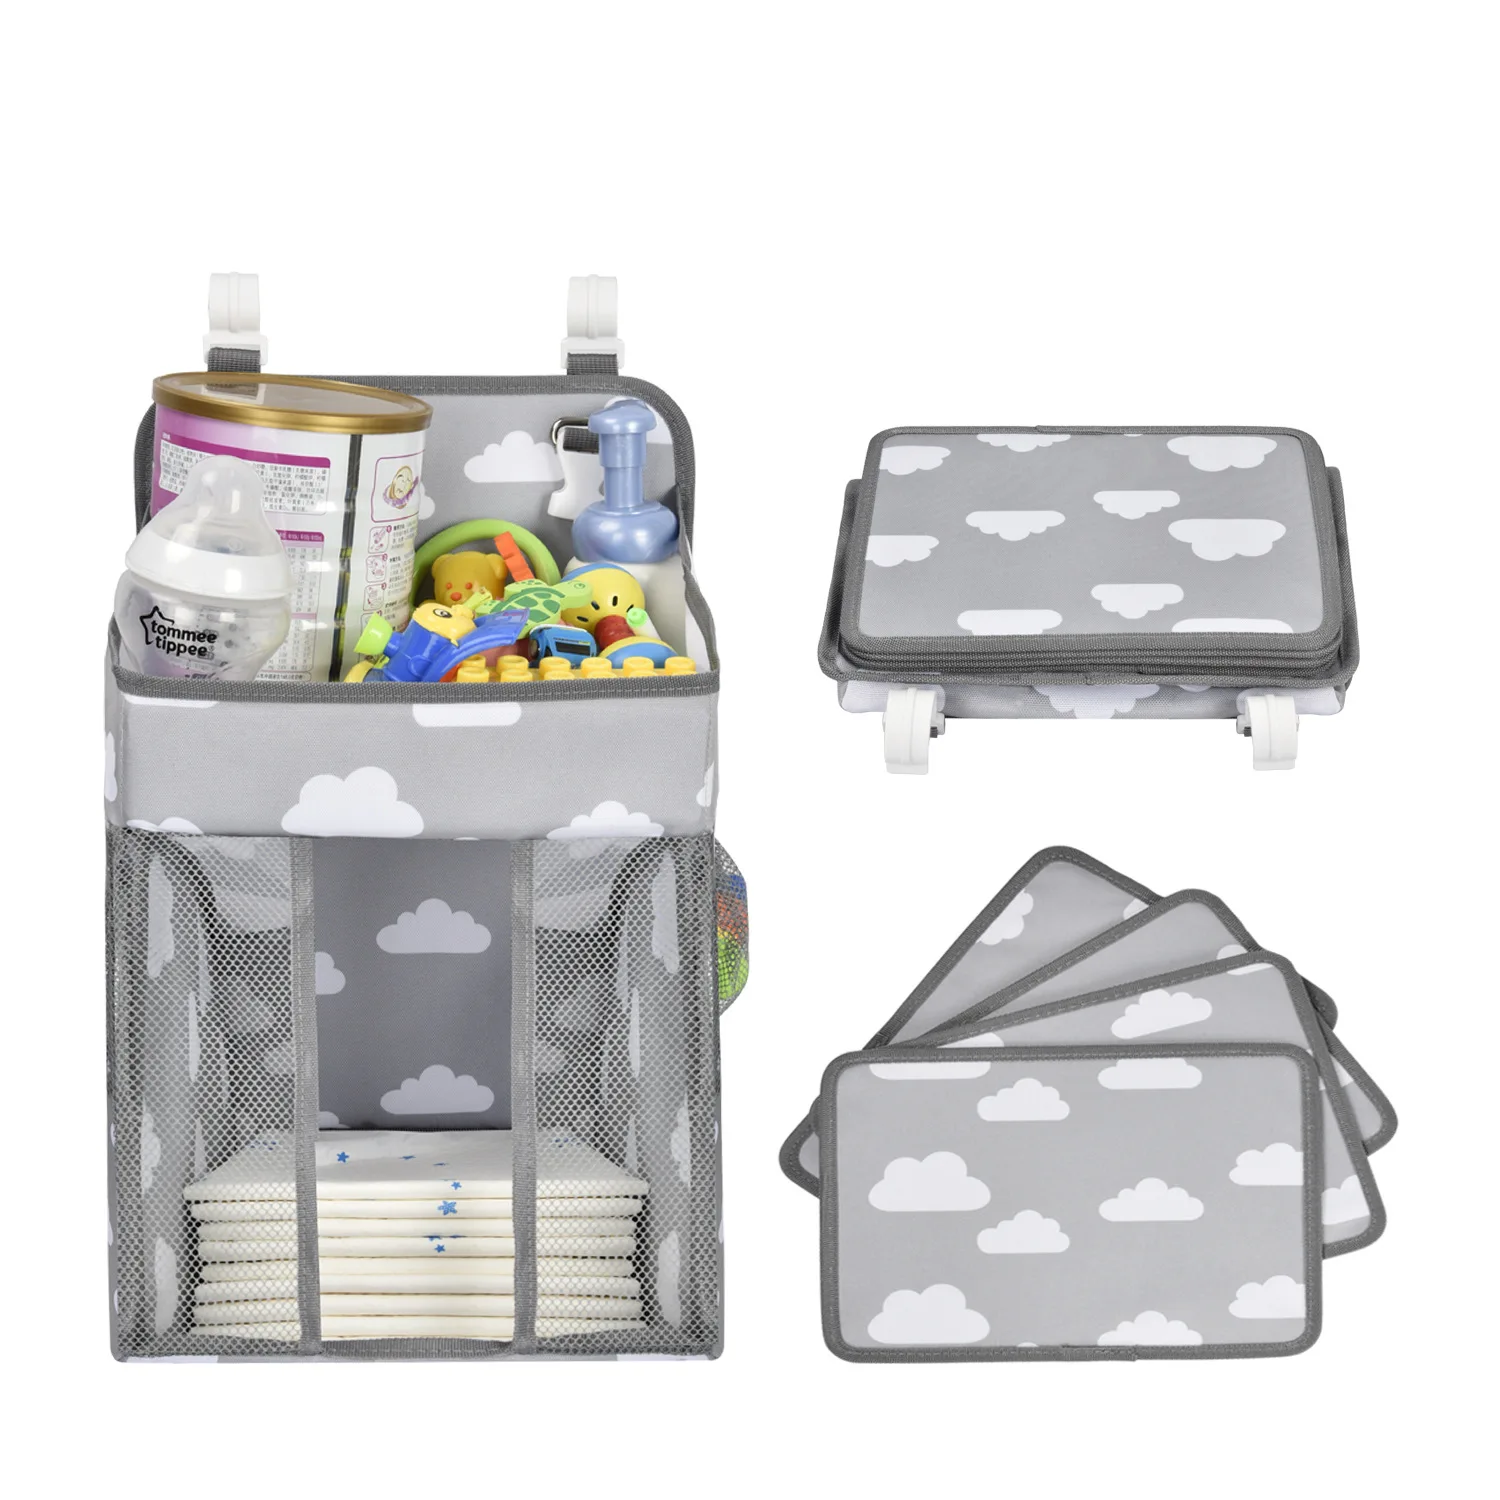 Органайзер для детской коляски сумка хранения новорожденной кровати предметы